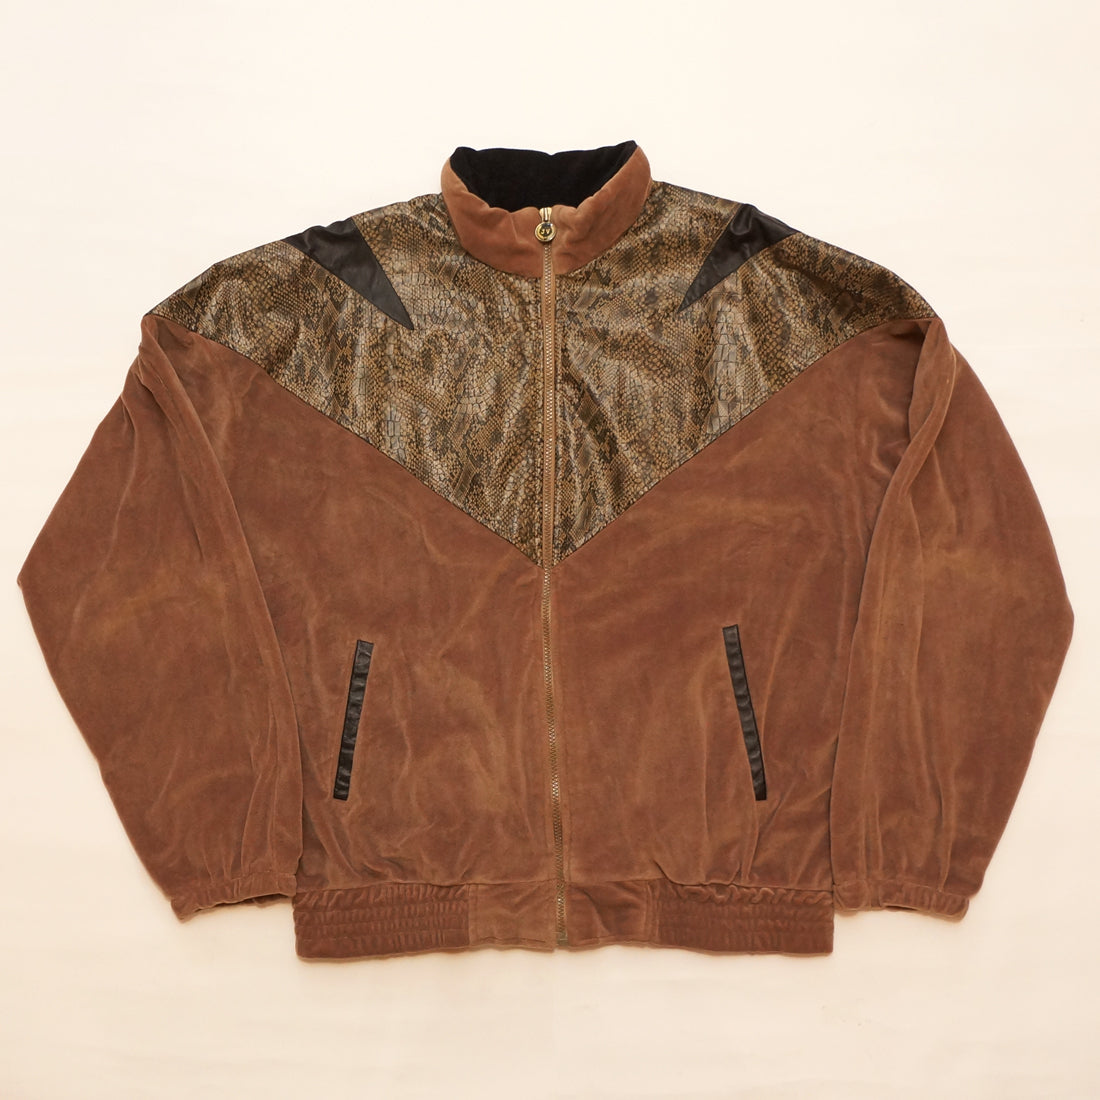 1 of 1 Custom 1980's Jackie Vital NYC "Bad Boys" Jacket